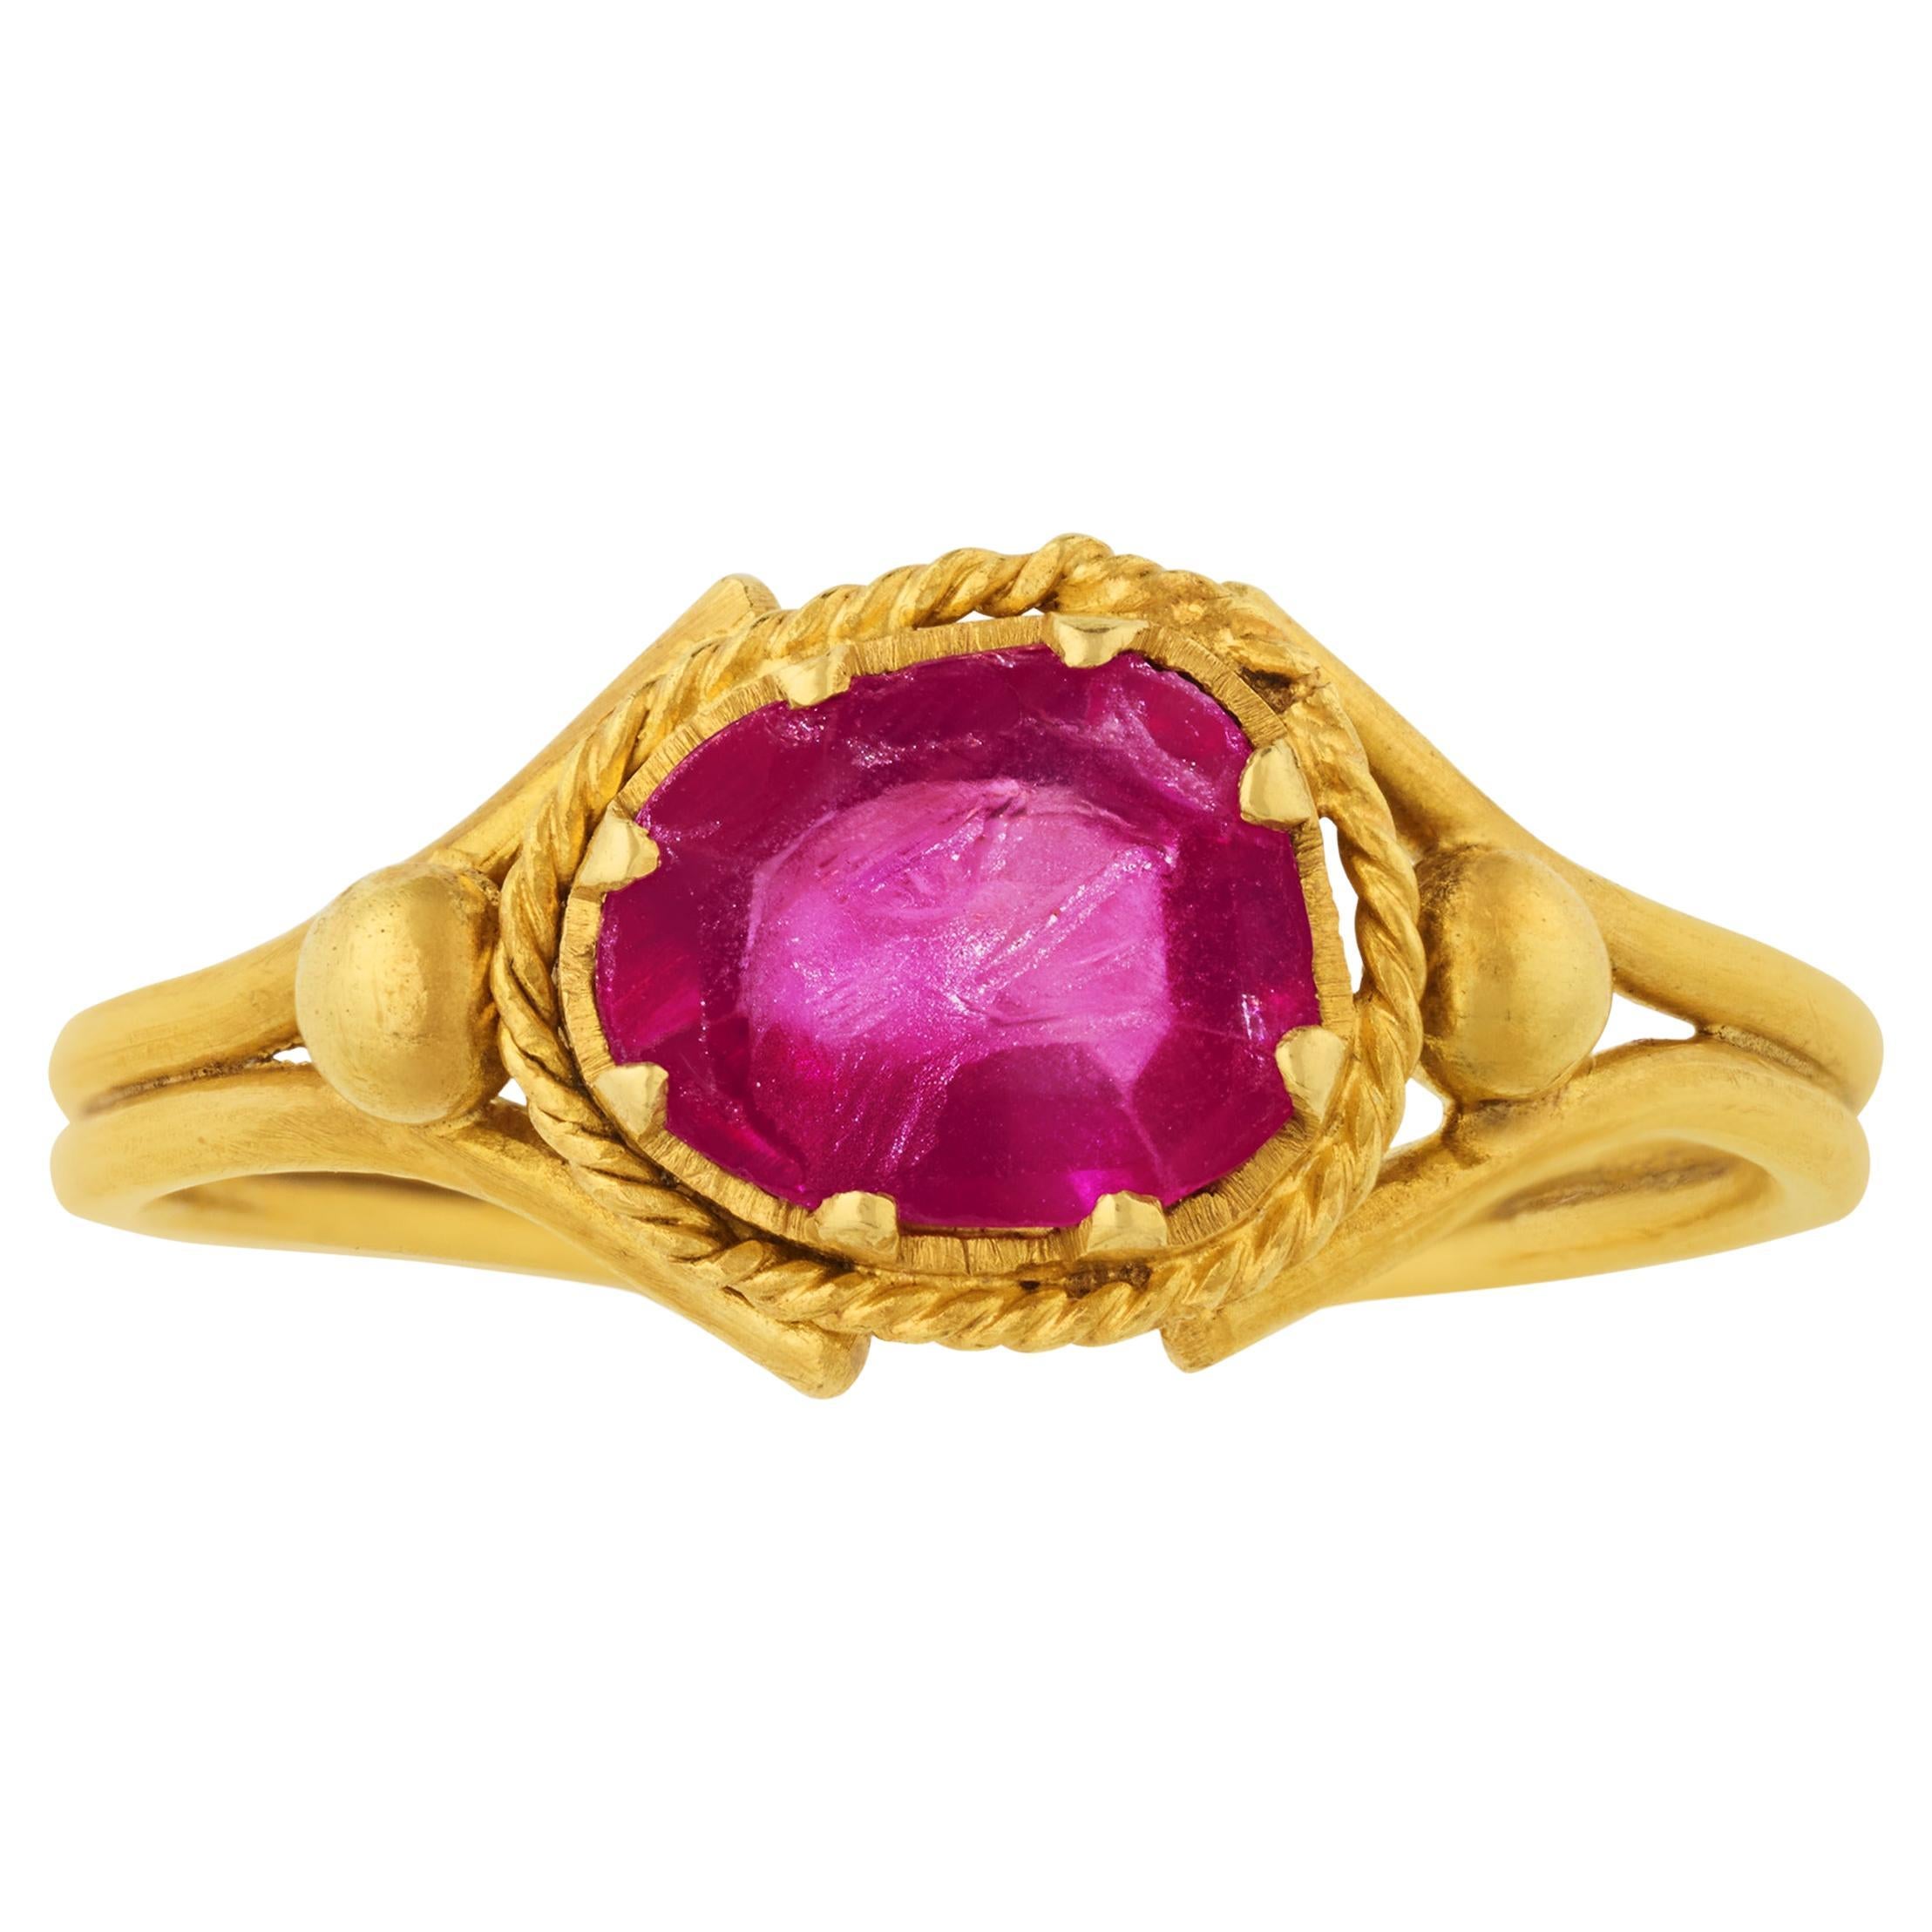 Burma Ruby Intaglio Ring